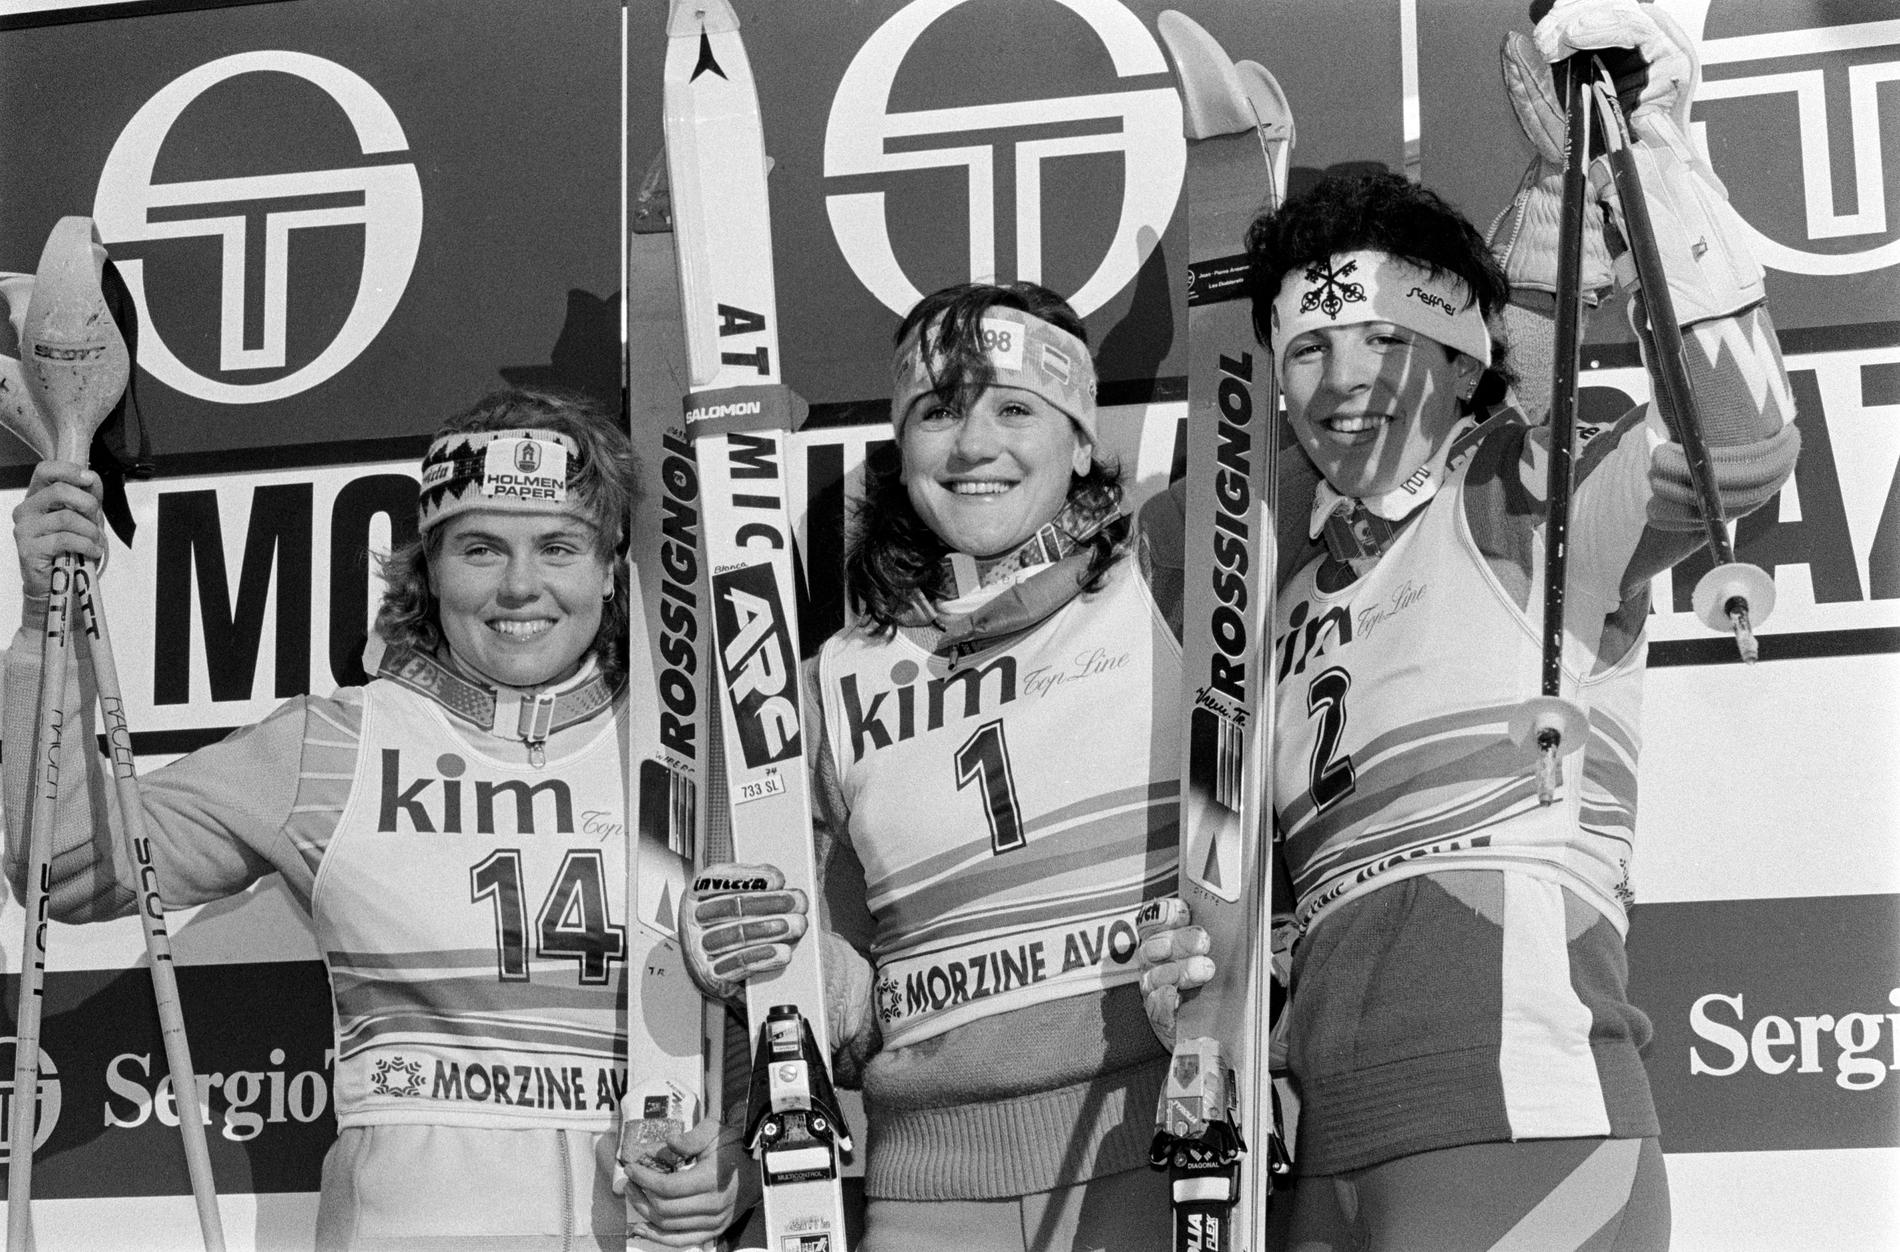 Blanca Fernandez Ochoa, i mitten, på bild bredvid Pernilla Wiberg, till vänster, i en världscuptävling 1990